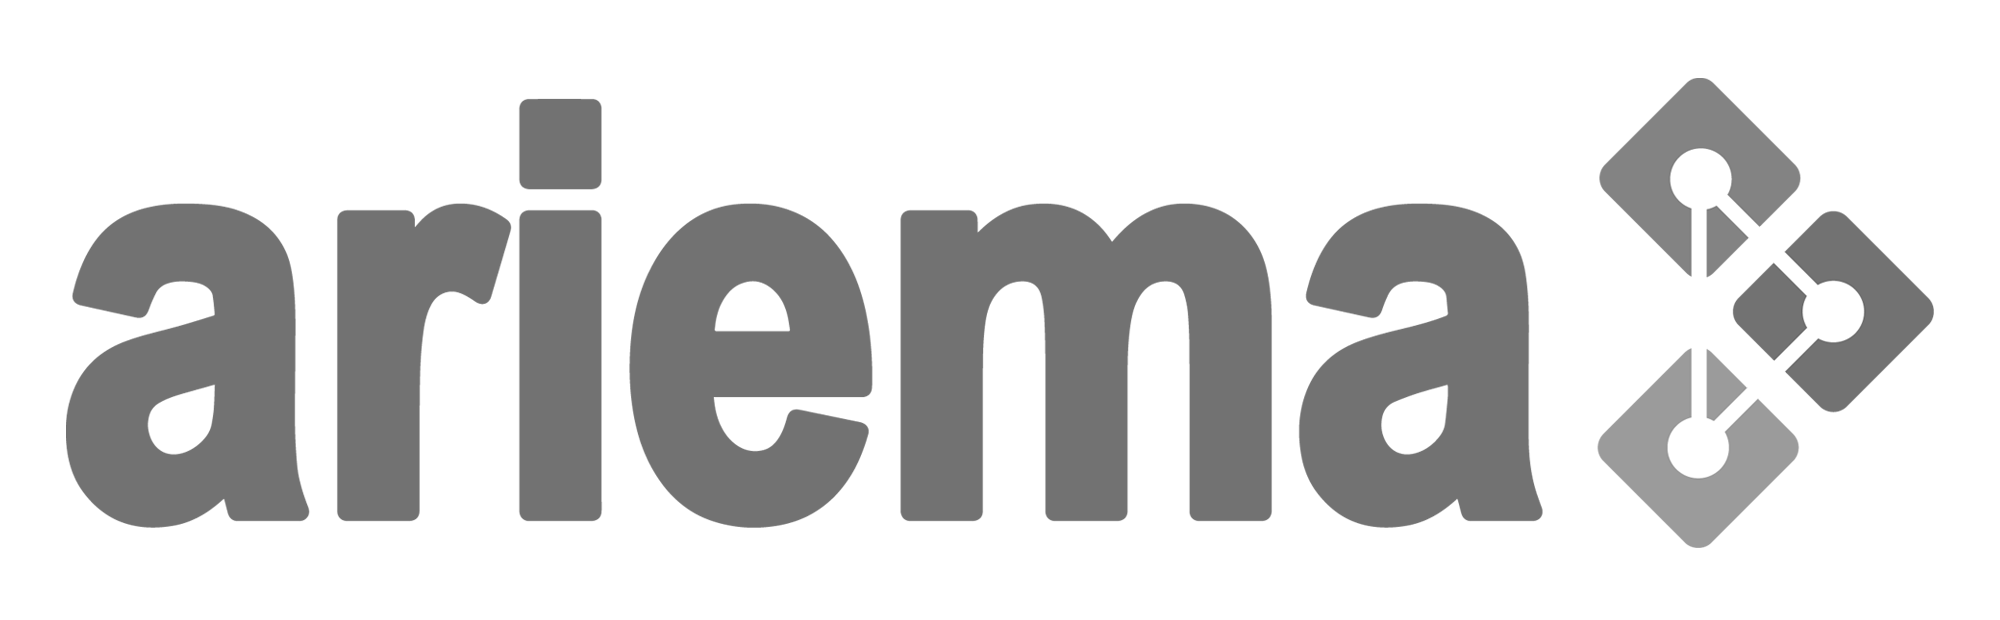 ARIEMA logo1 bn